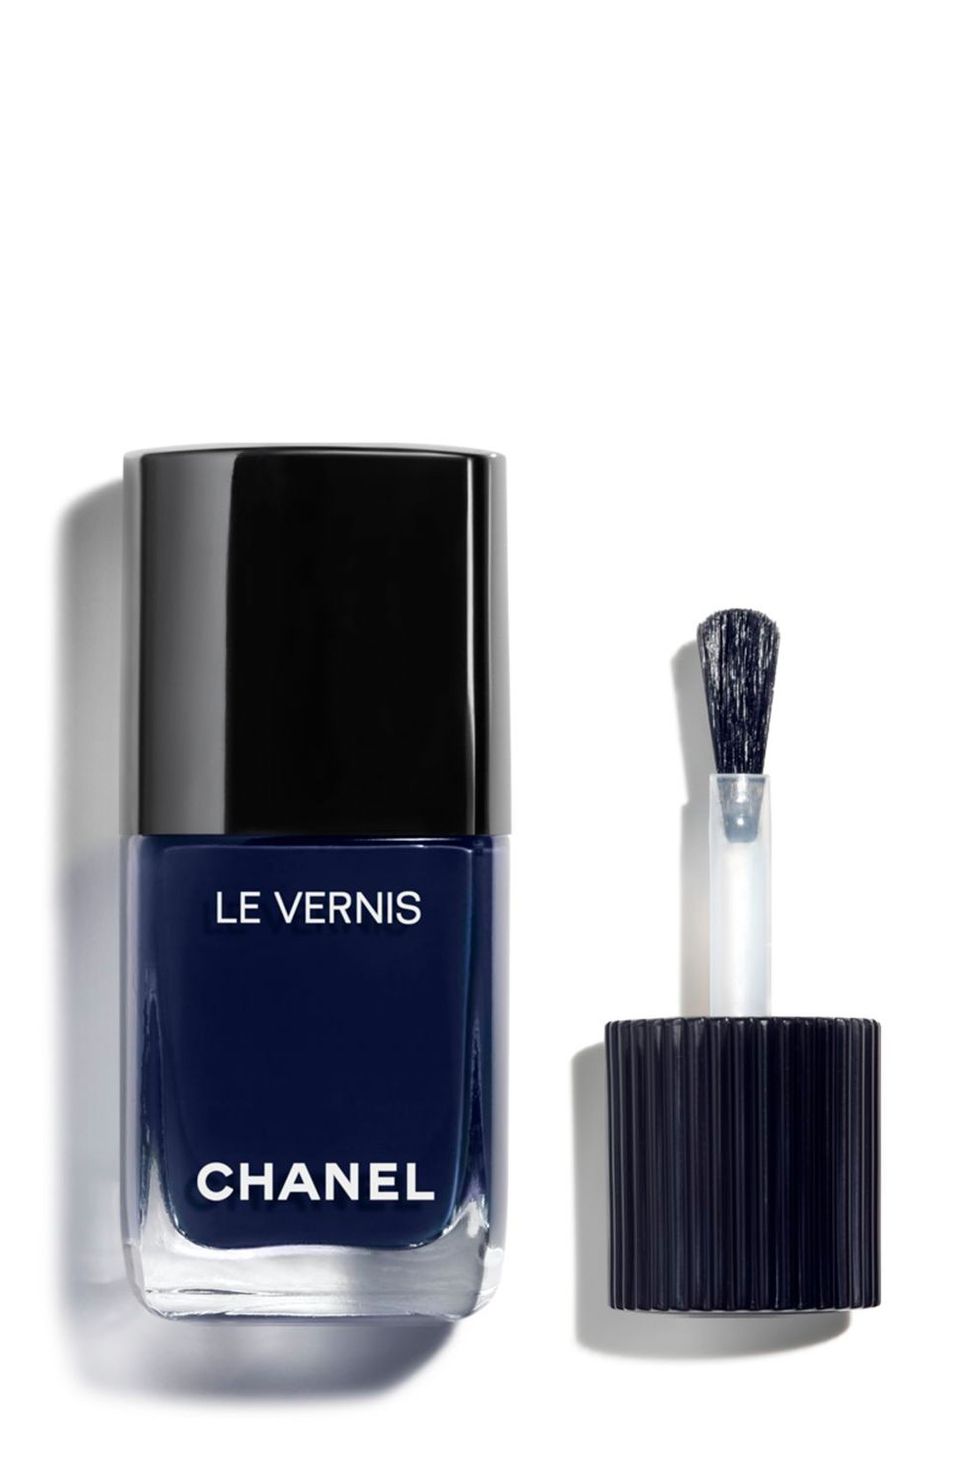 CHANEL SIGNATURE DE CHANEL Intense Longwear Eyeliner Pen Reviews 2023